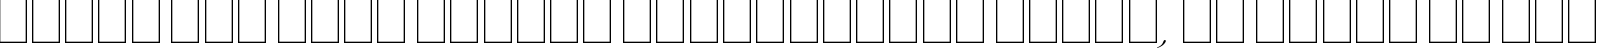 Пример написания шрифтом Young Baroque LET Plain:1.0 текста на русском